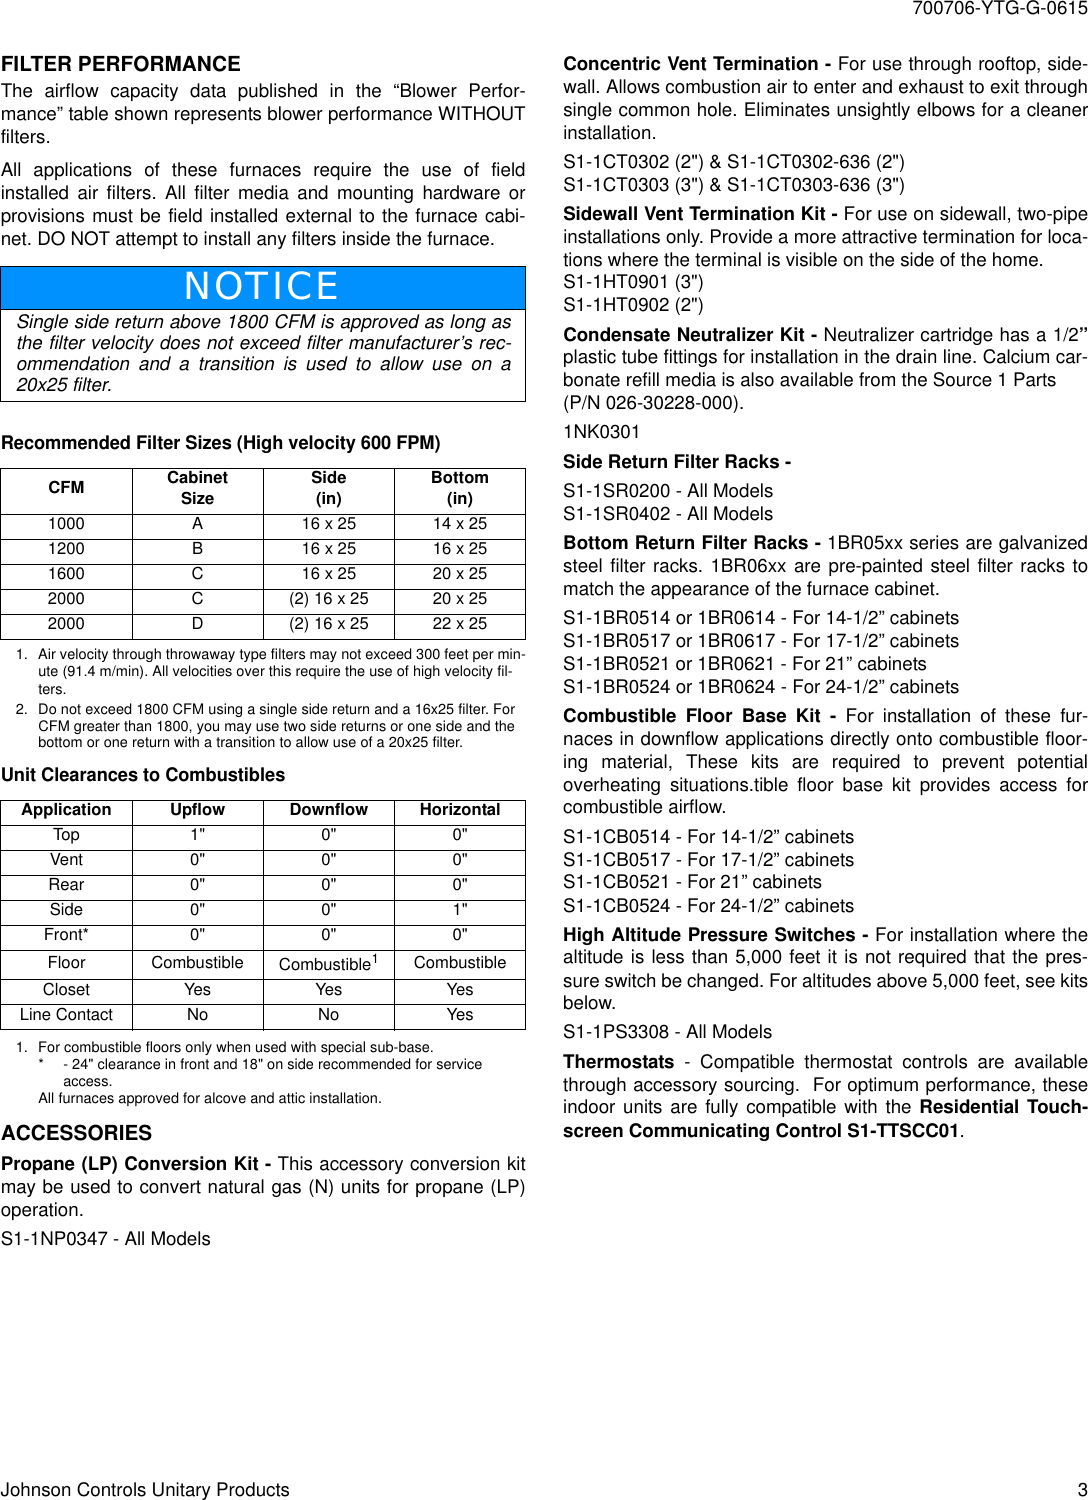 Page 3 of 4 - York Tm9V-Technical-Guide 700706-YTG-G-0615  York-tm9v-technical-guide